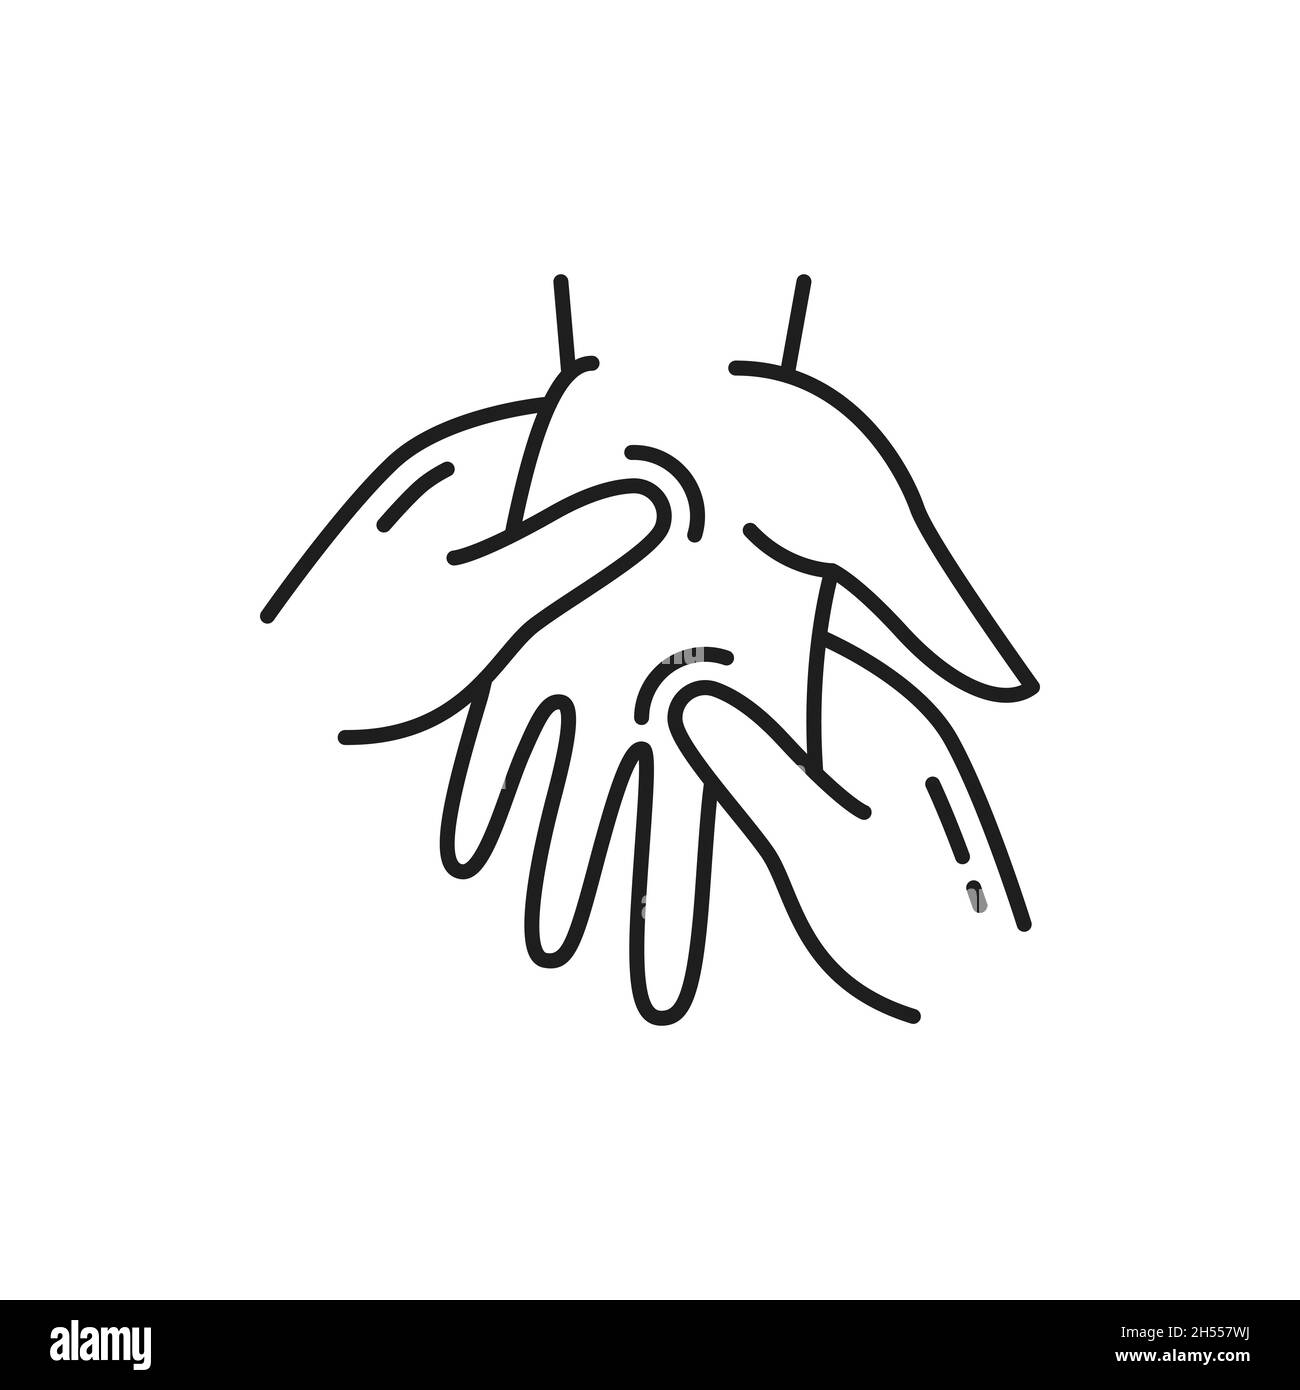 Handmassage, Arzt massiert menschliche Handfläche isoliert Umriss Symbol. Vektor-Arthritis, Reflexzonenmassage und rheumatoide, medizinische und osteopathische ther Stock Vektor